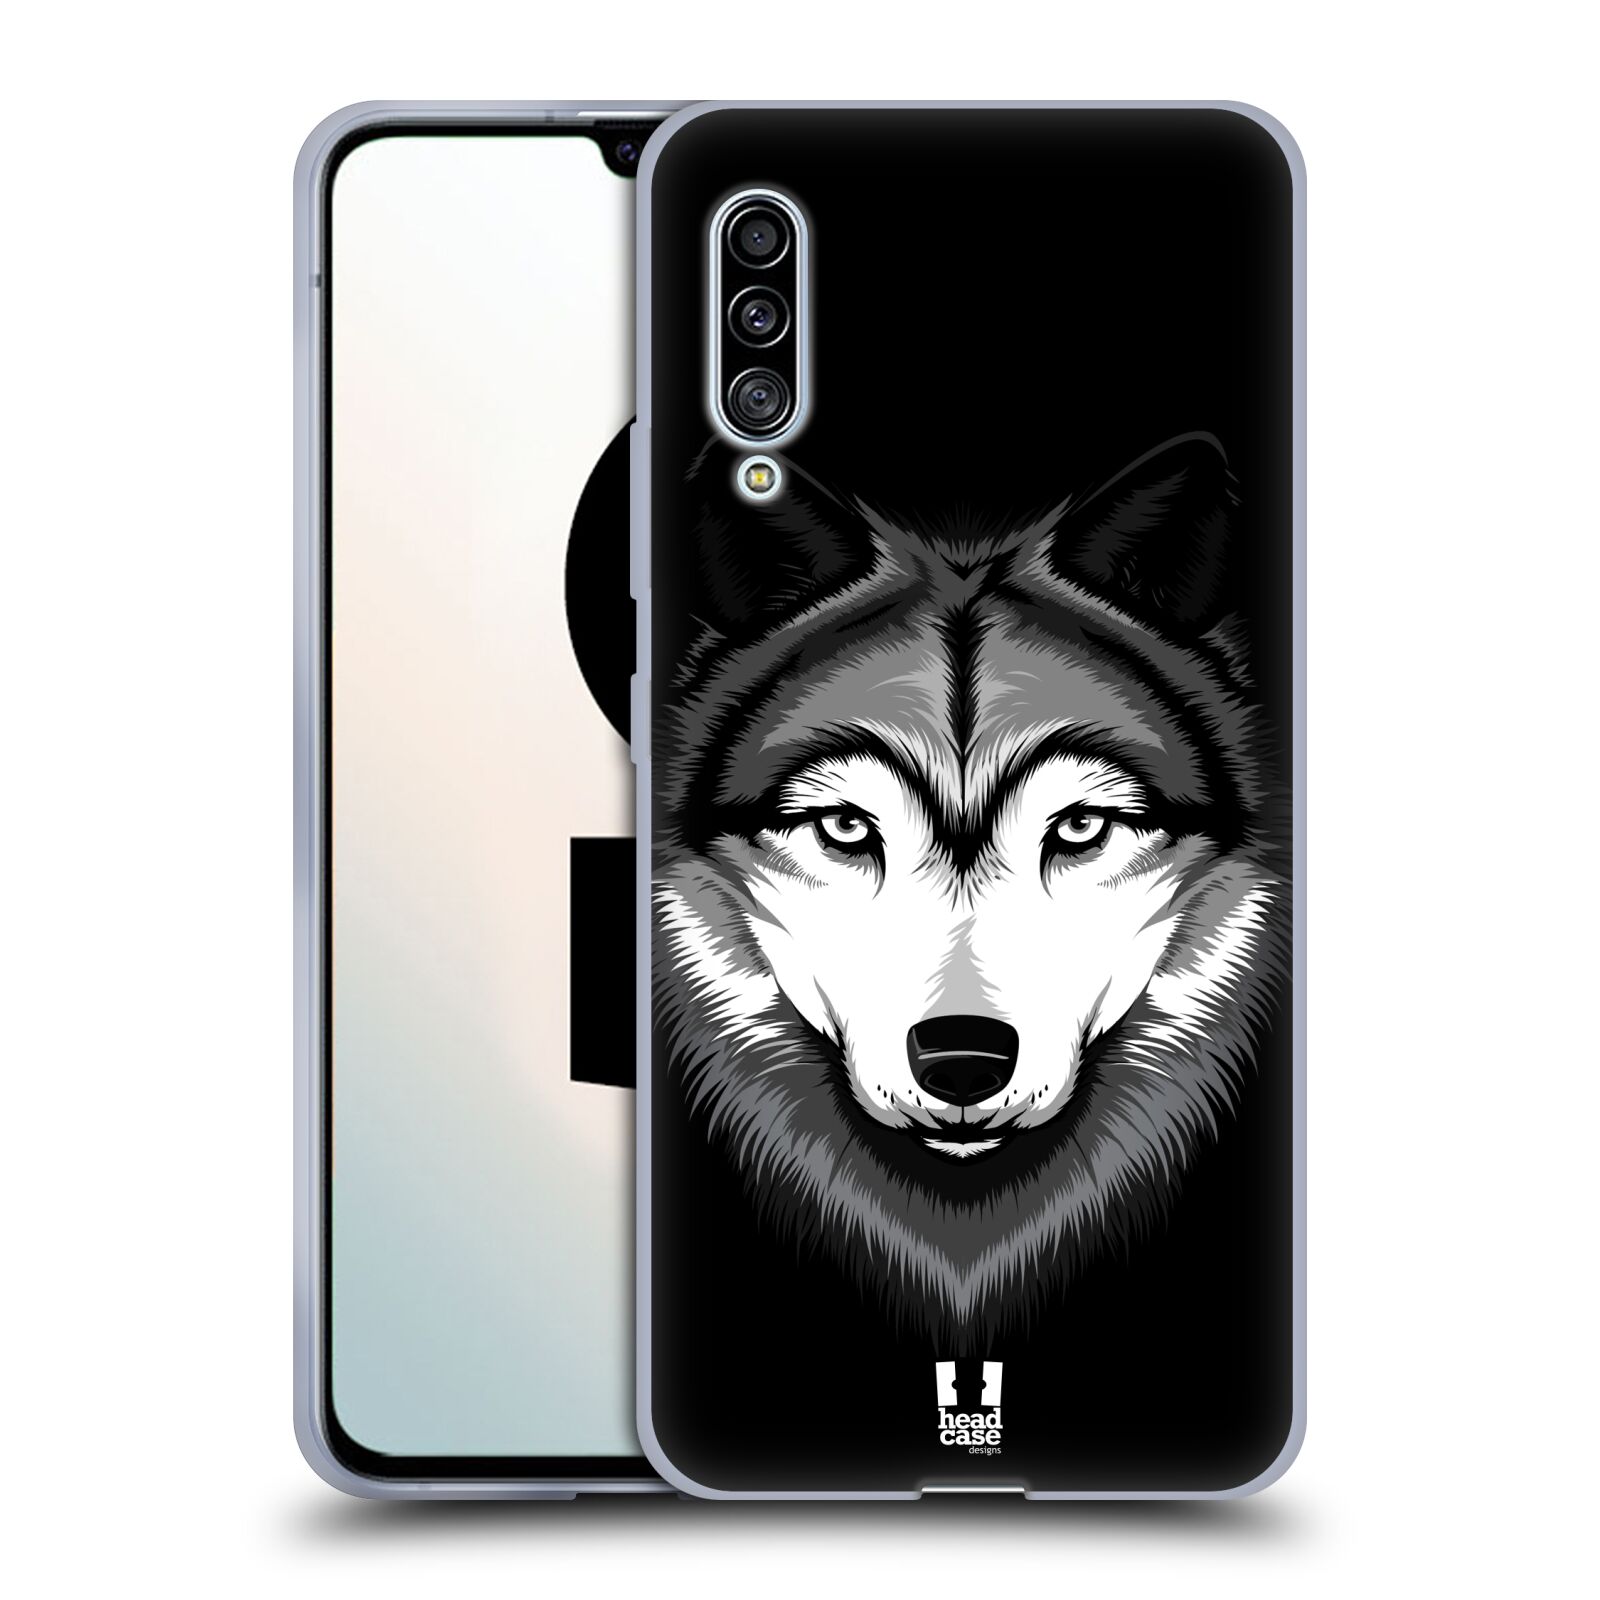 Plastový obal HEAD CASE na mobil Samsung Galaxy A90 5G vzor Zvíře kreslená tvář 2 vlk